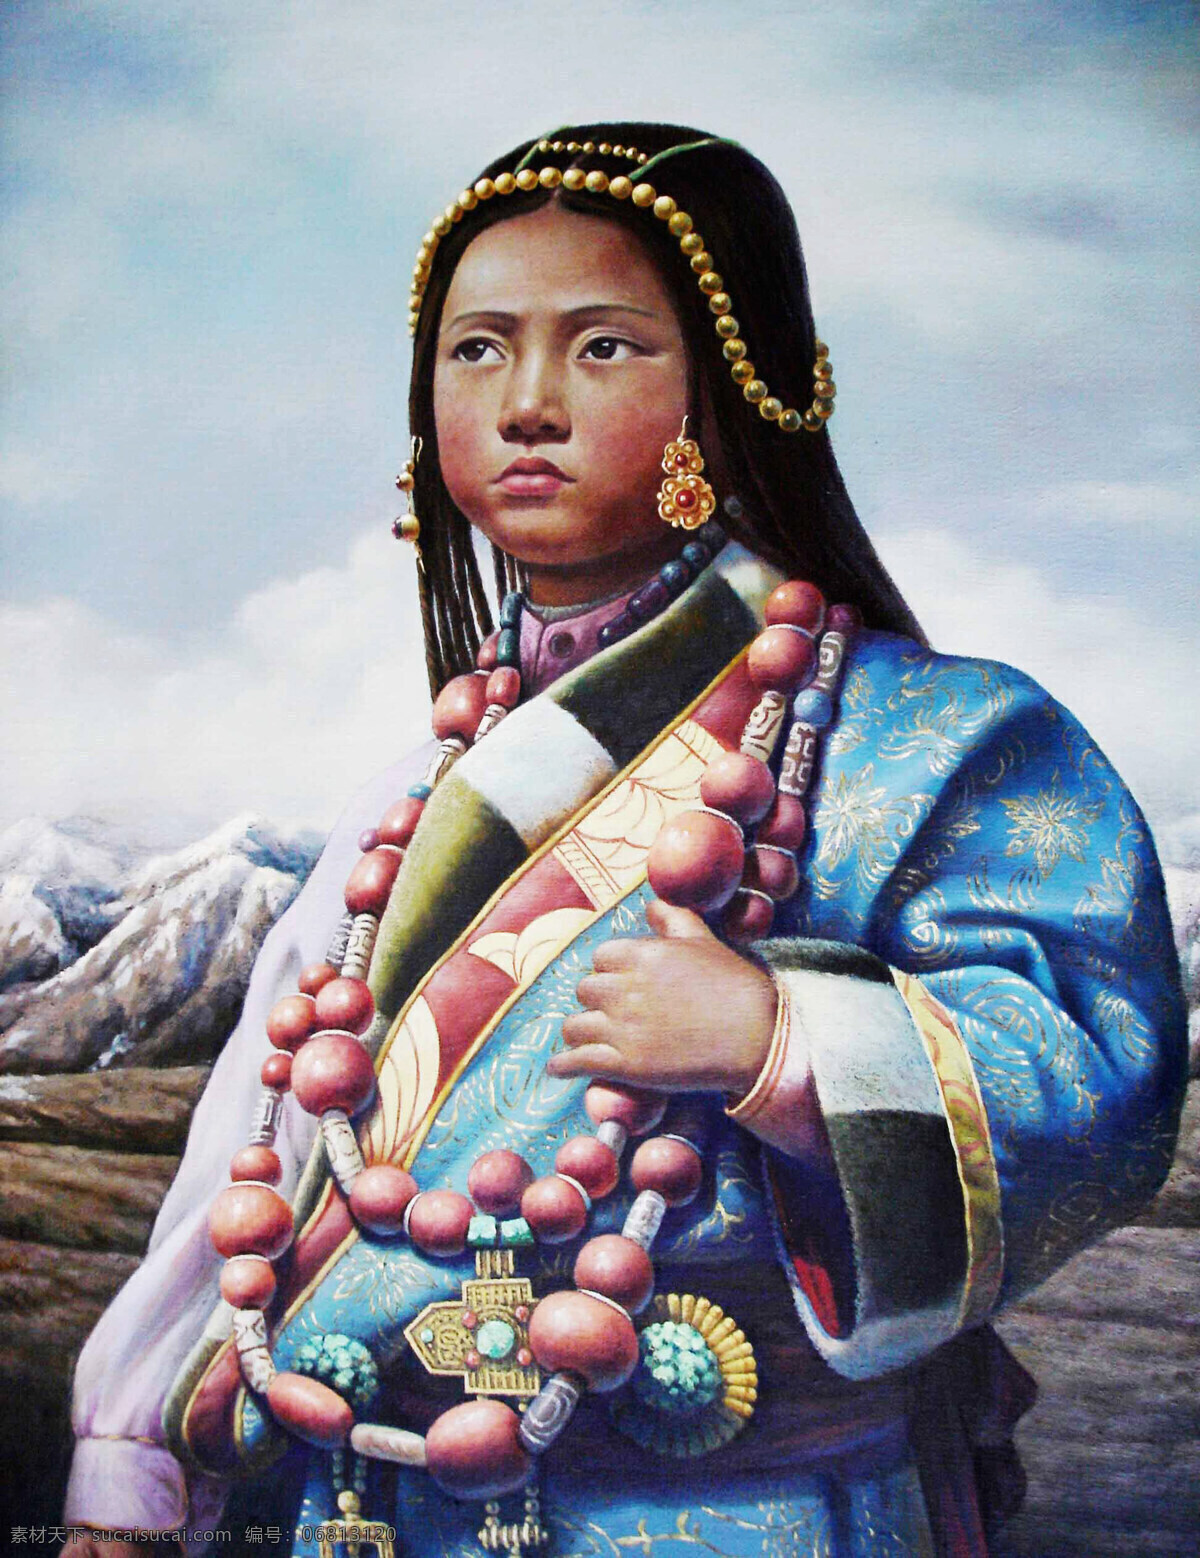 藏族小女孩 美术 绘画 油画 色彩画 人物画 女人 少女 小姑娘 动作 表情 姿势 服装 发型 雪山 油画艺术 油画作品6 绘画书法 文化艺术